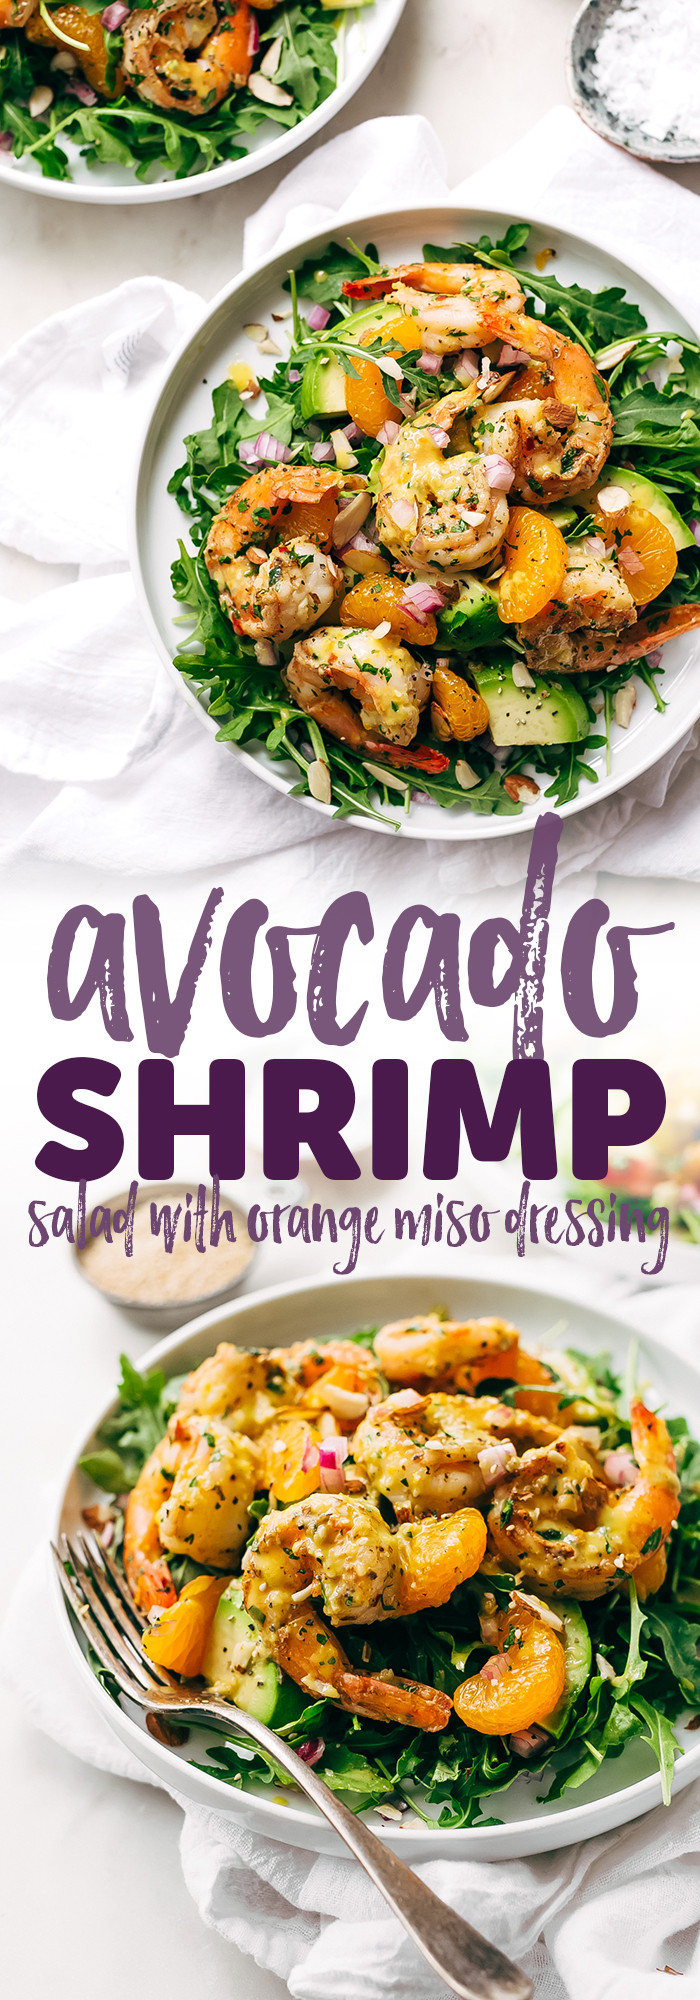 Recipes Using Salad Shrimp
 Avocado Shrimp Salad with Citrus Miso Dressing Recipe